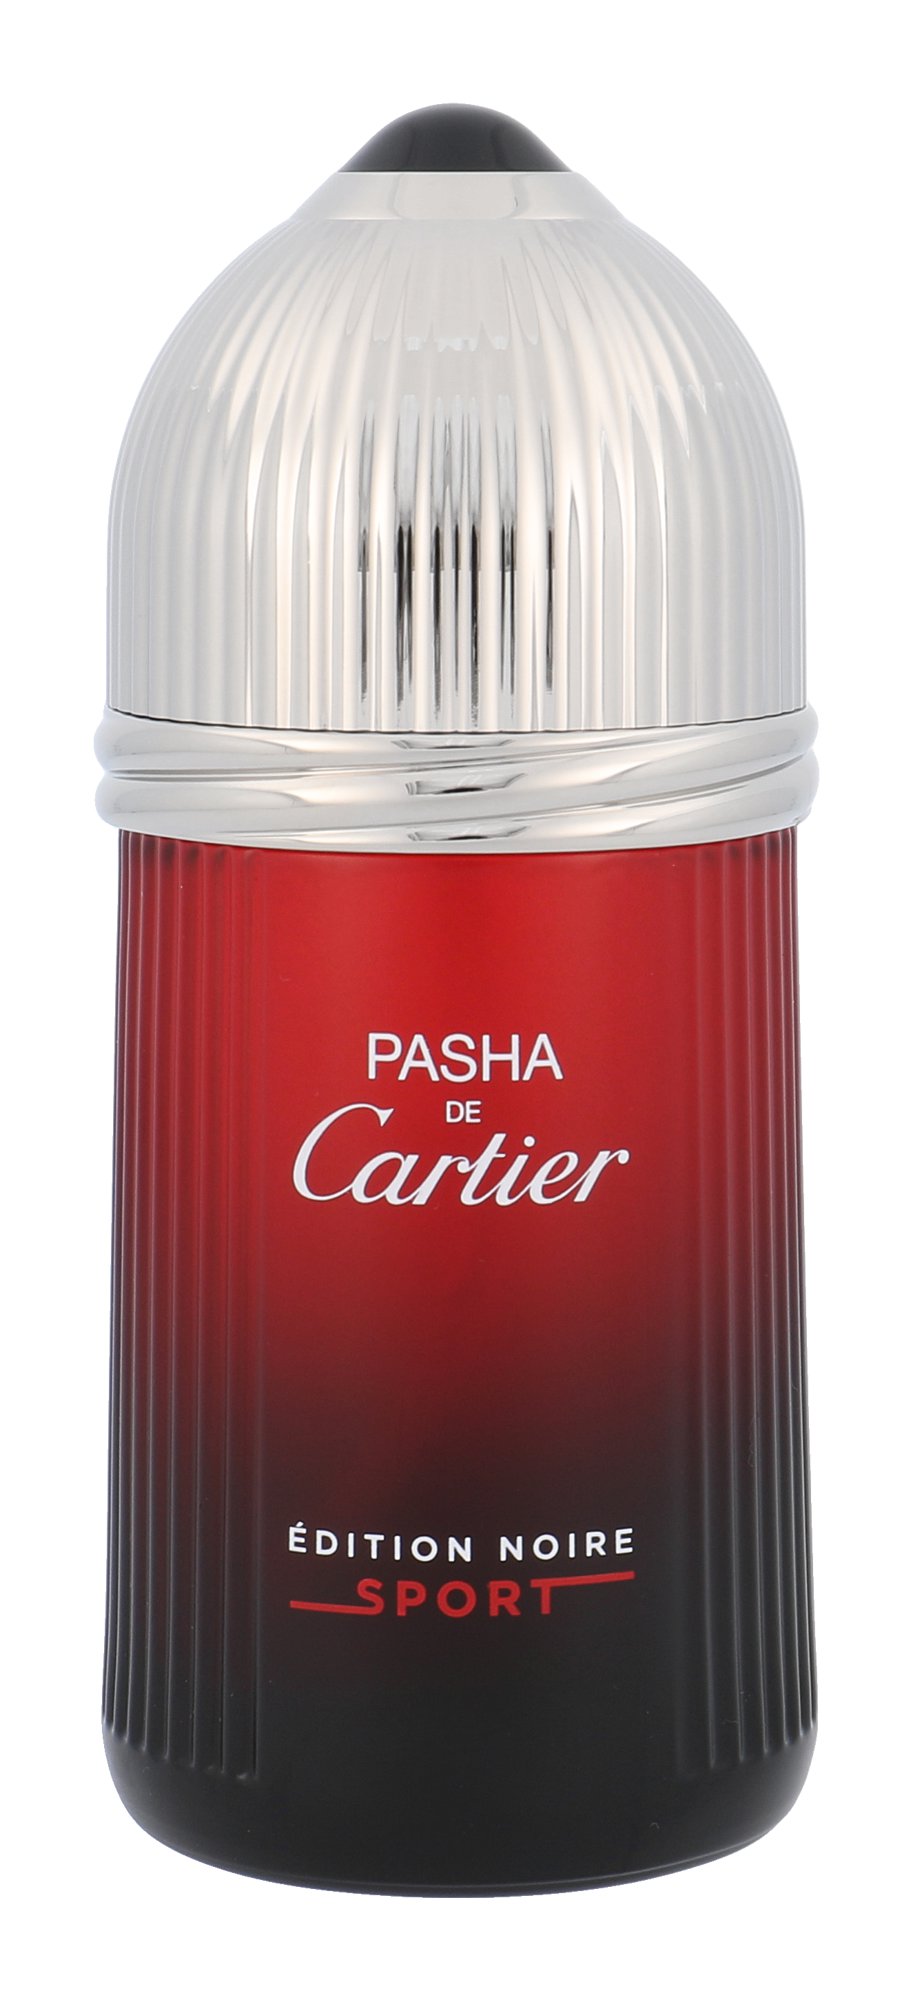 Cartier Pasha De Cartier Edition Noire Sport, edt 100ml